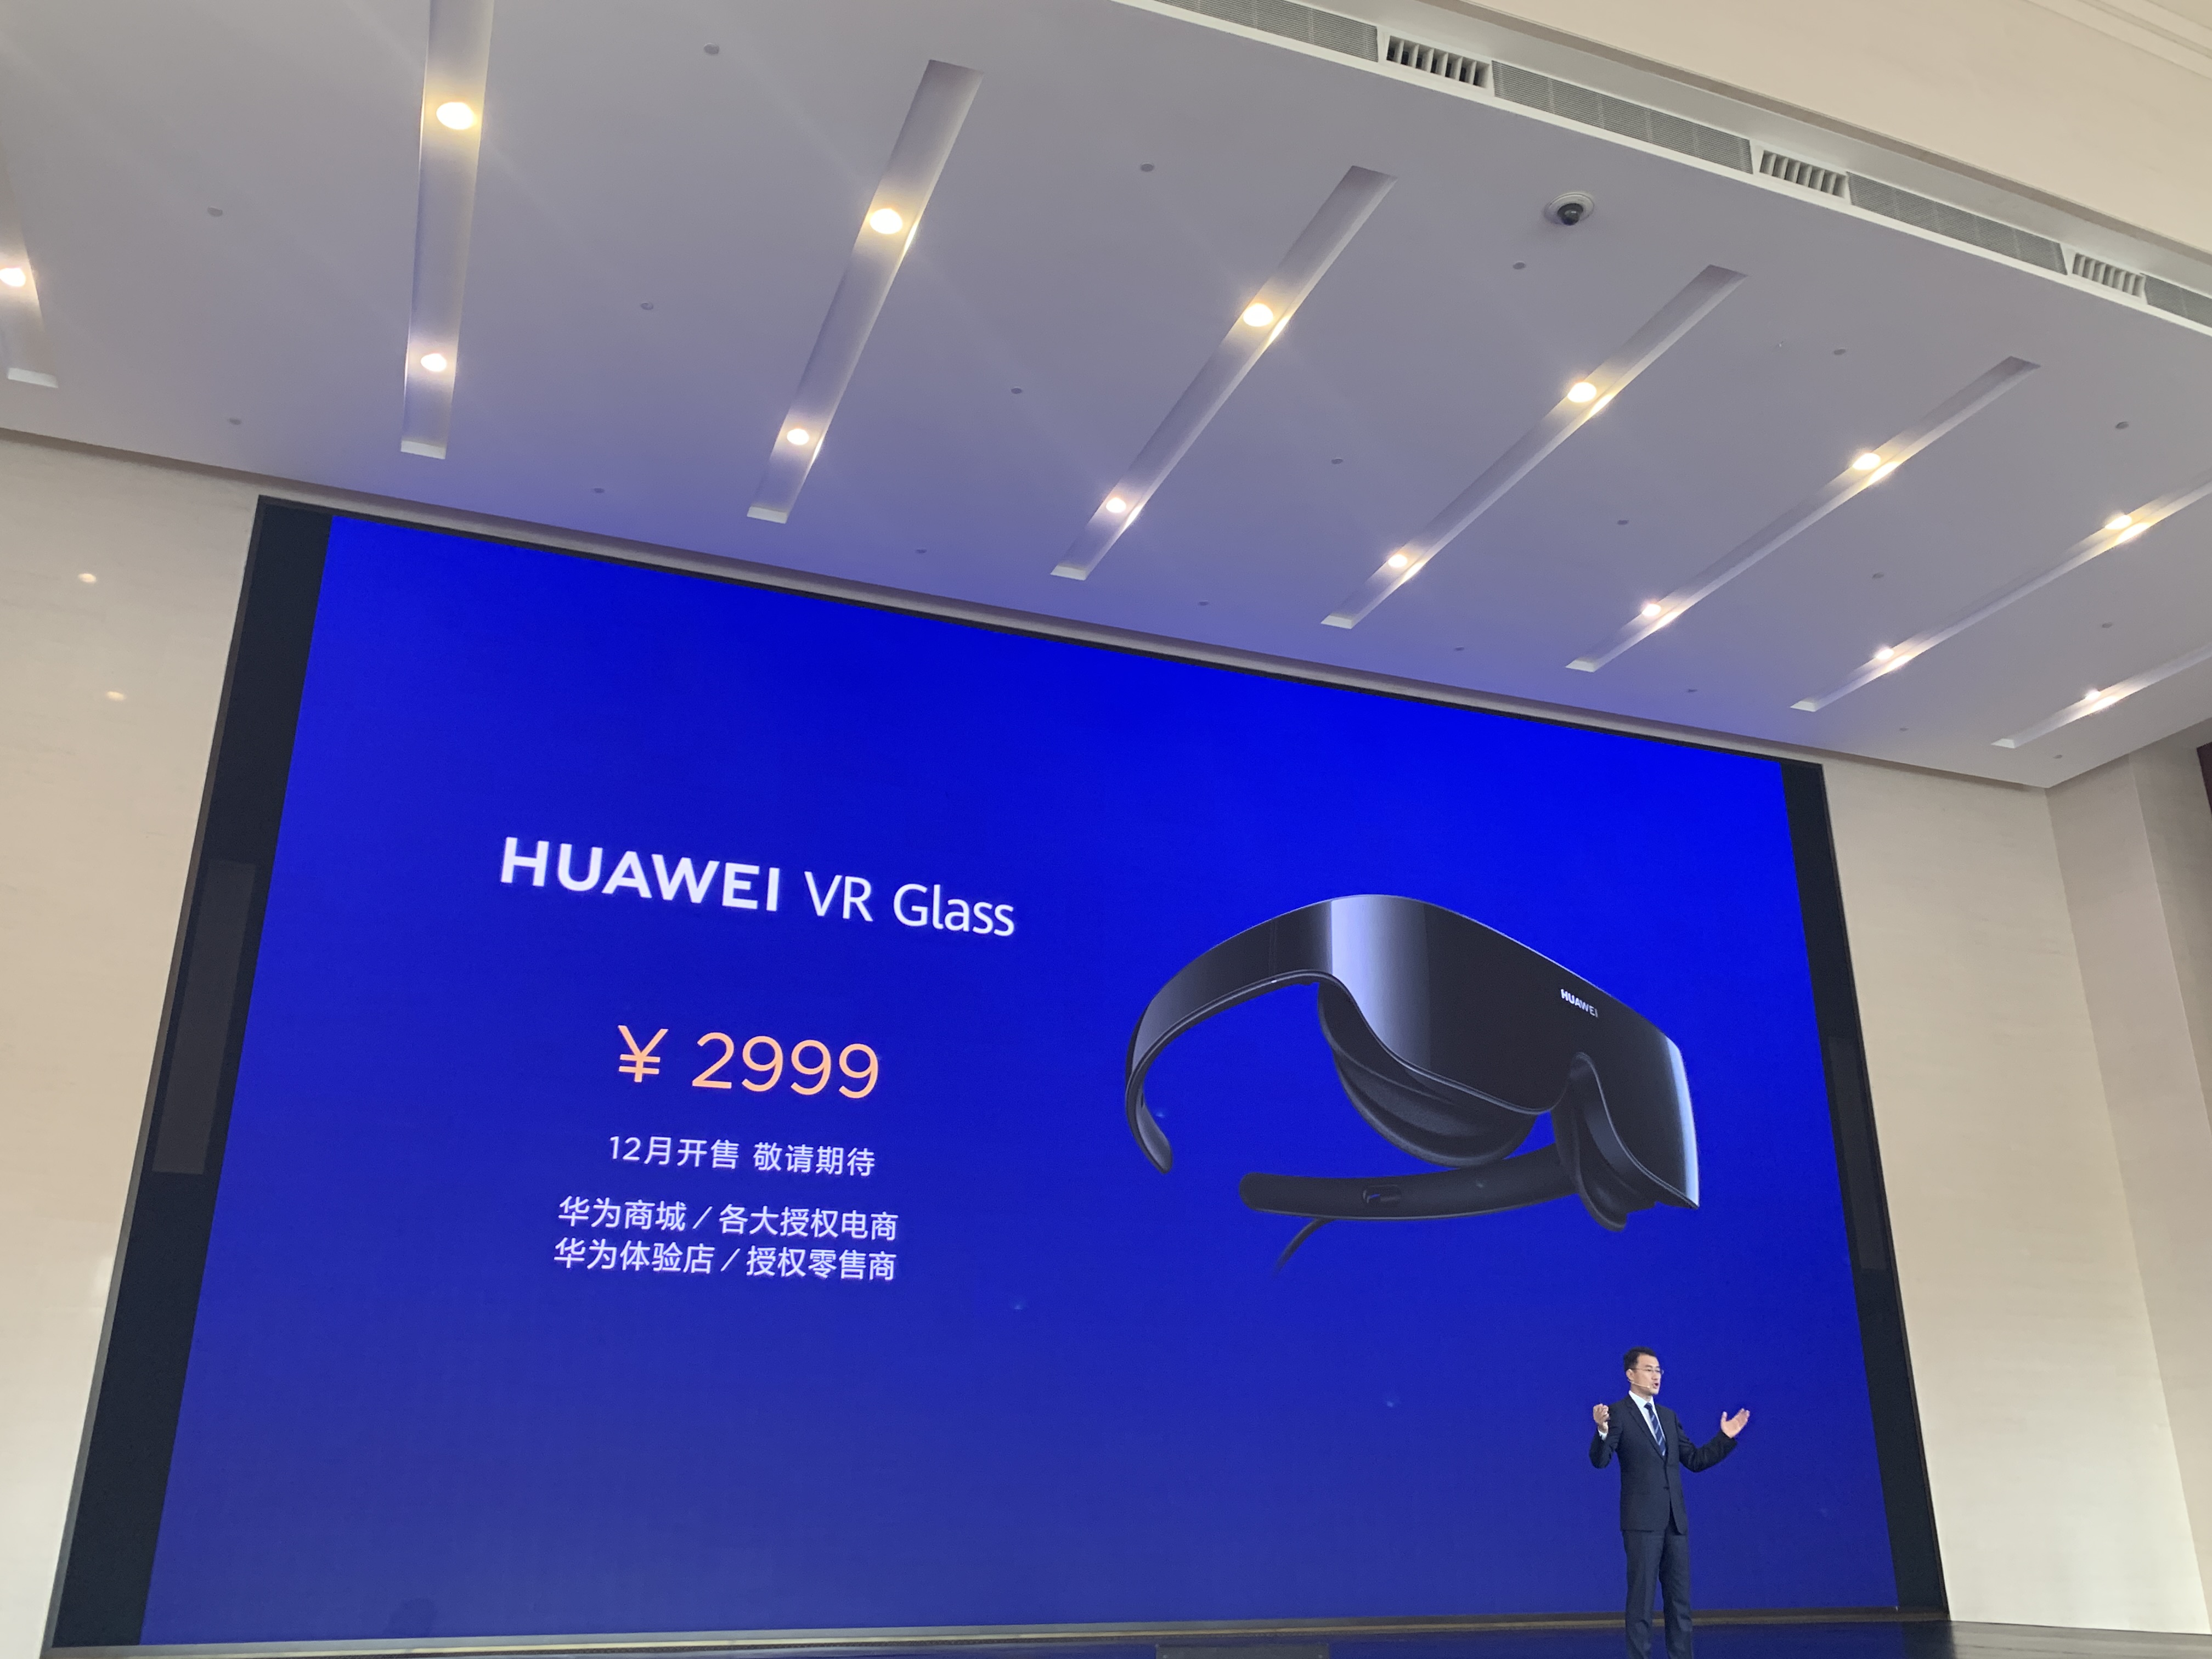 华为VR Glass将于12月开售，售价2999元